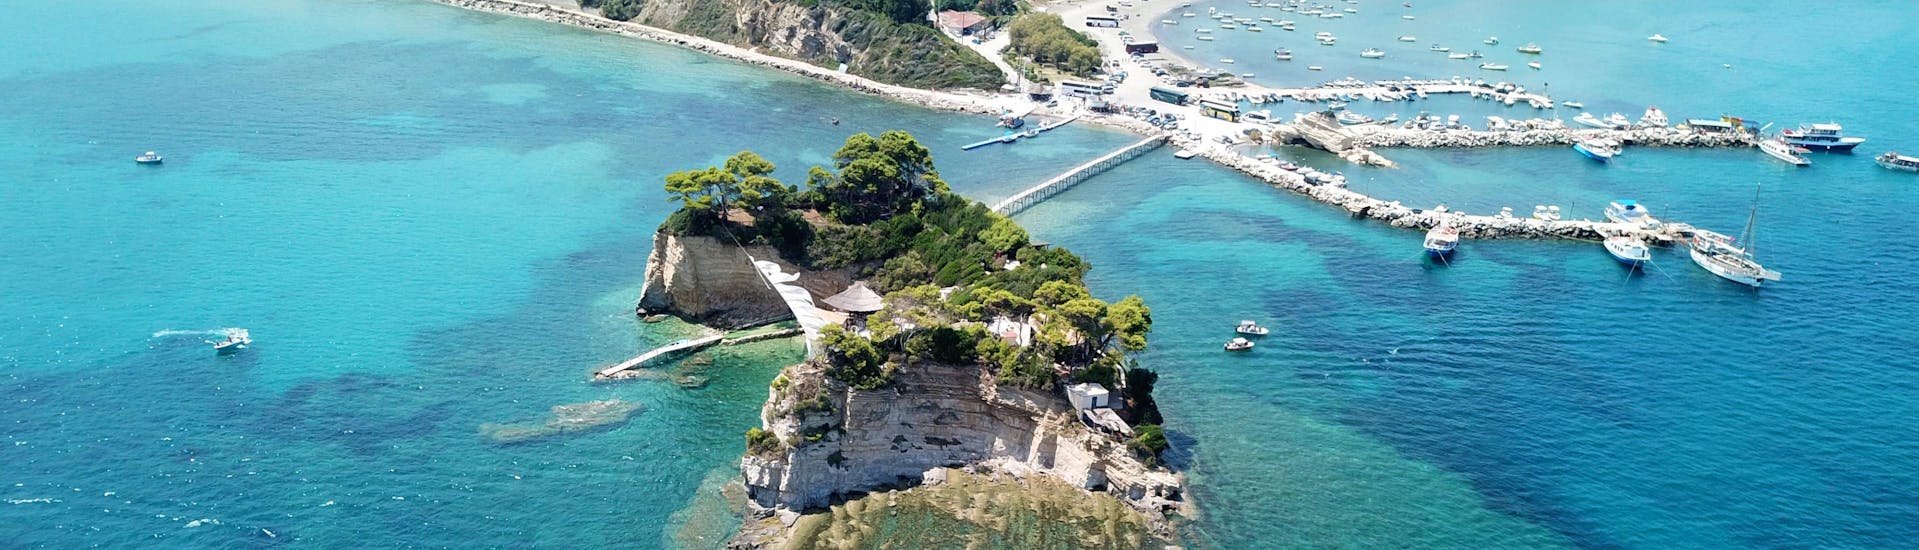 Bovenaanzicht van de baai van Laganas, Zakynthos, met de houten brug naar Cameo eiland. 